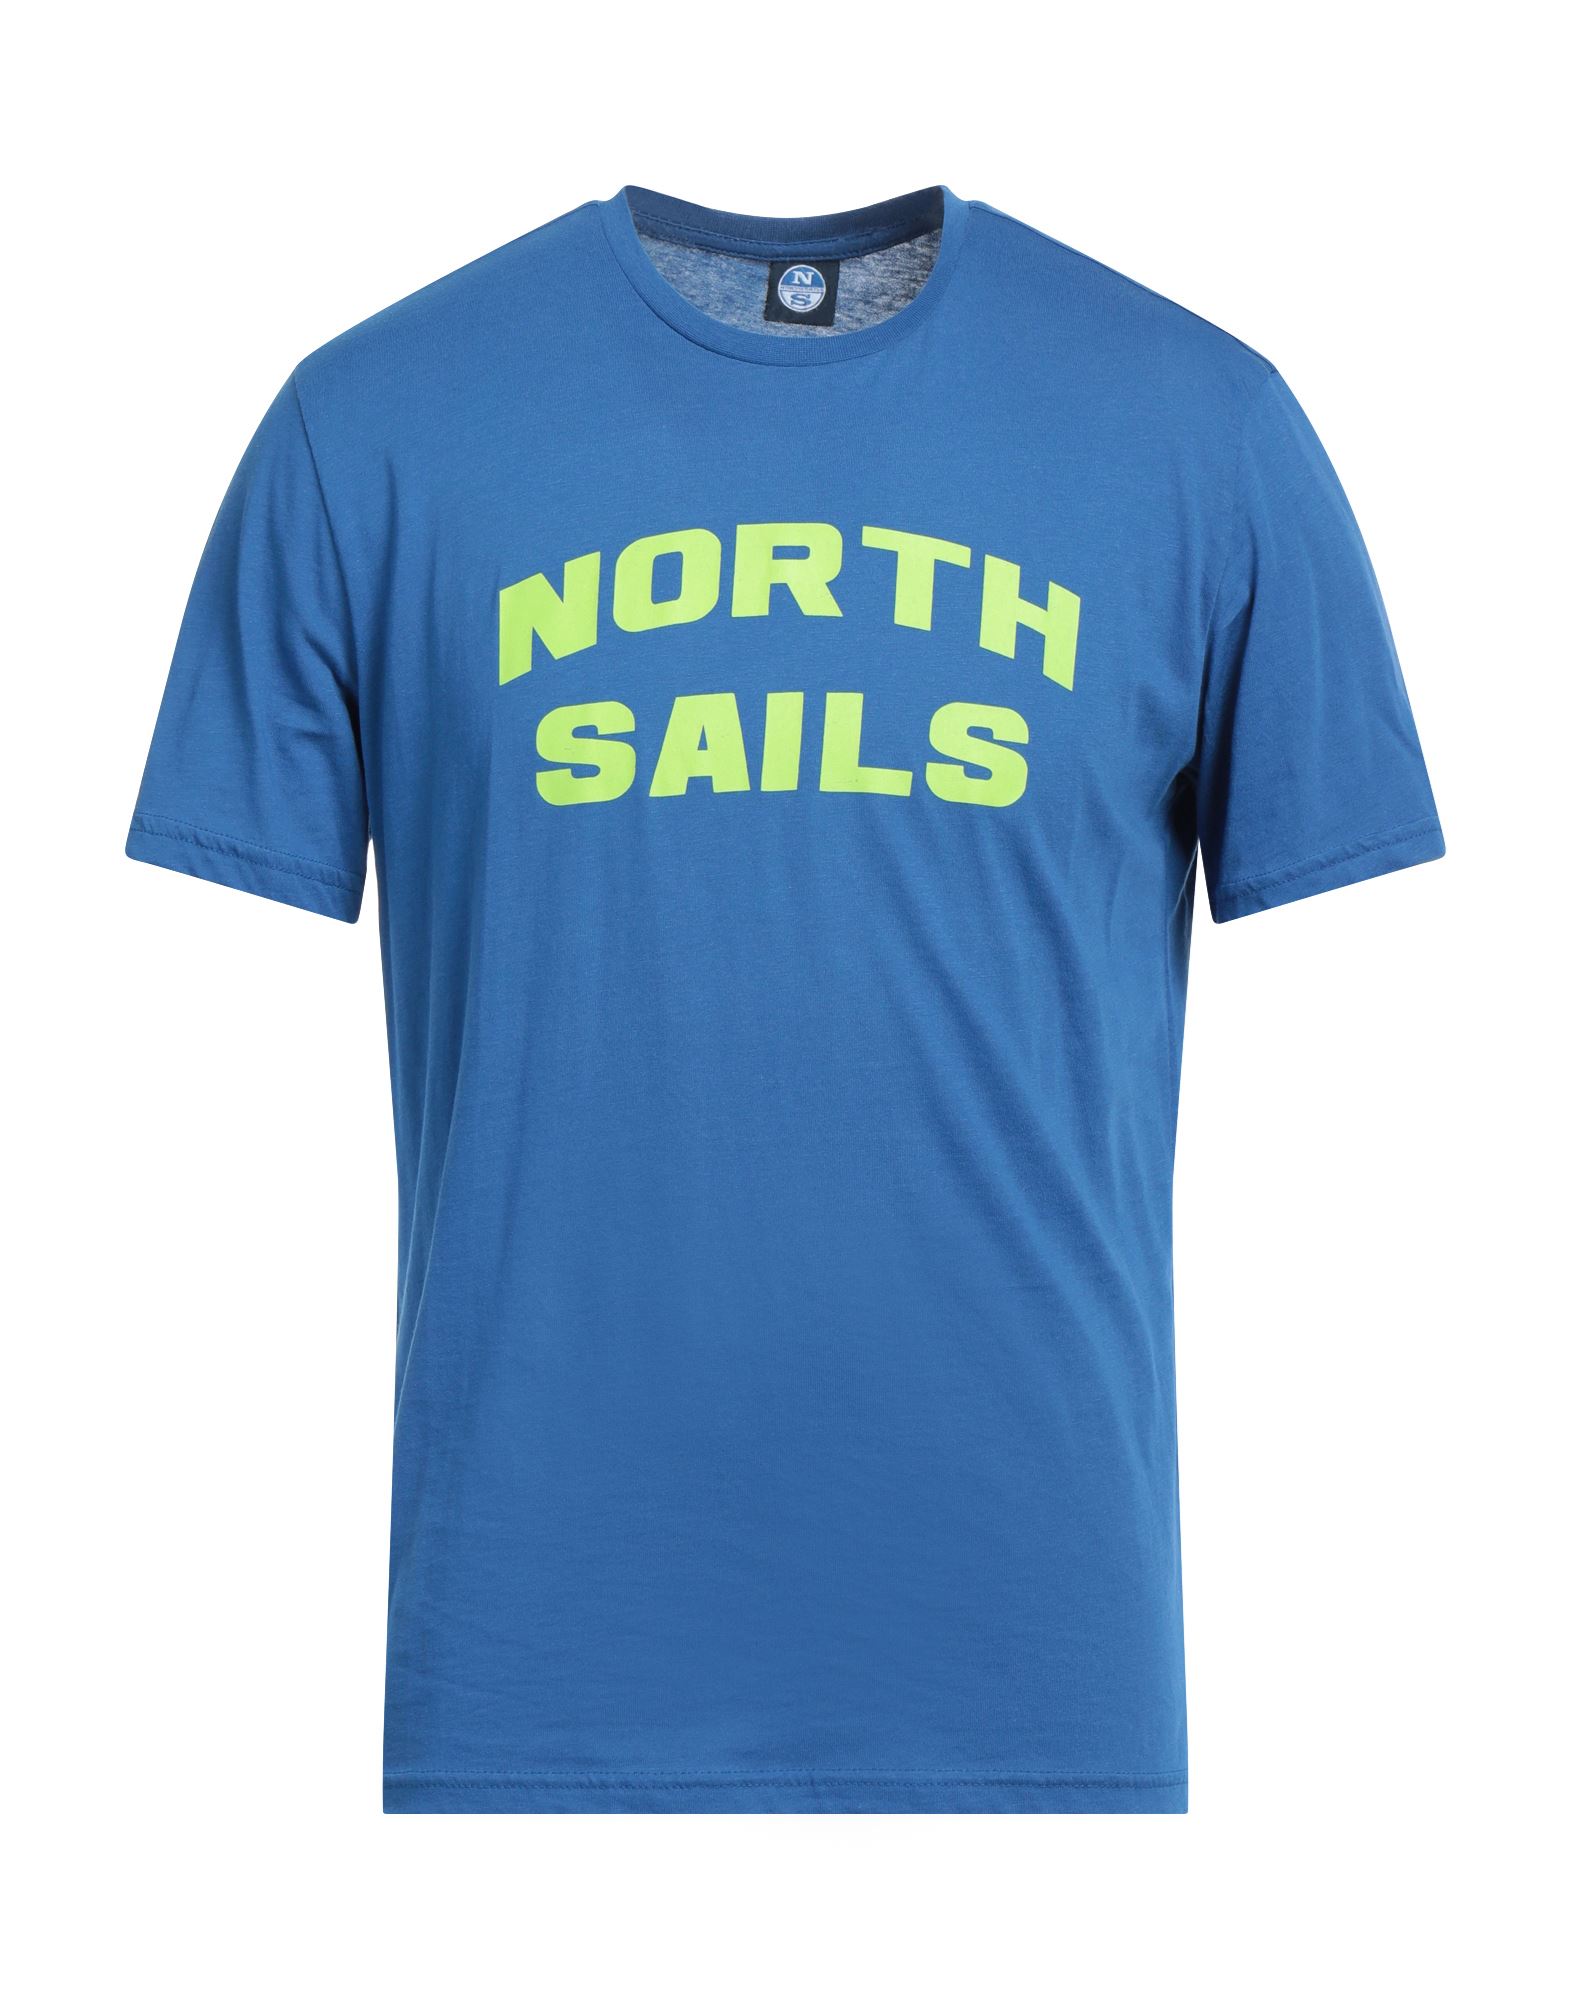 NORTH SAILS T-shirts Herren Blau von NORTH SAILS